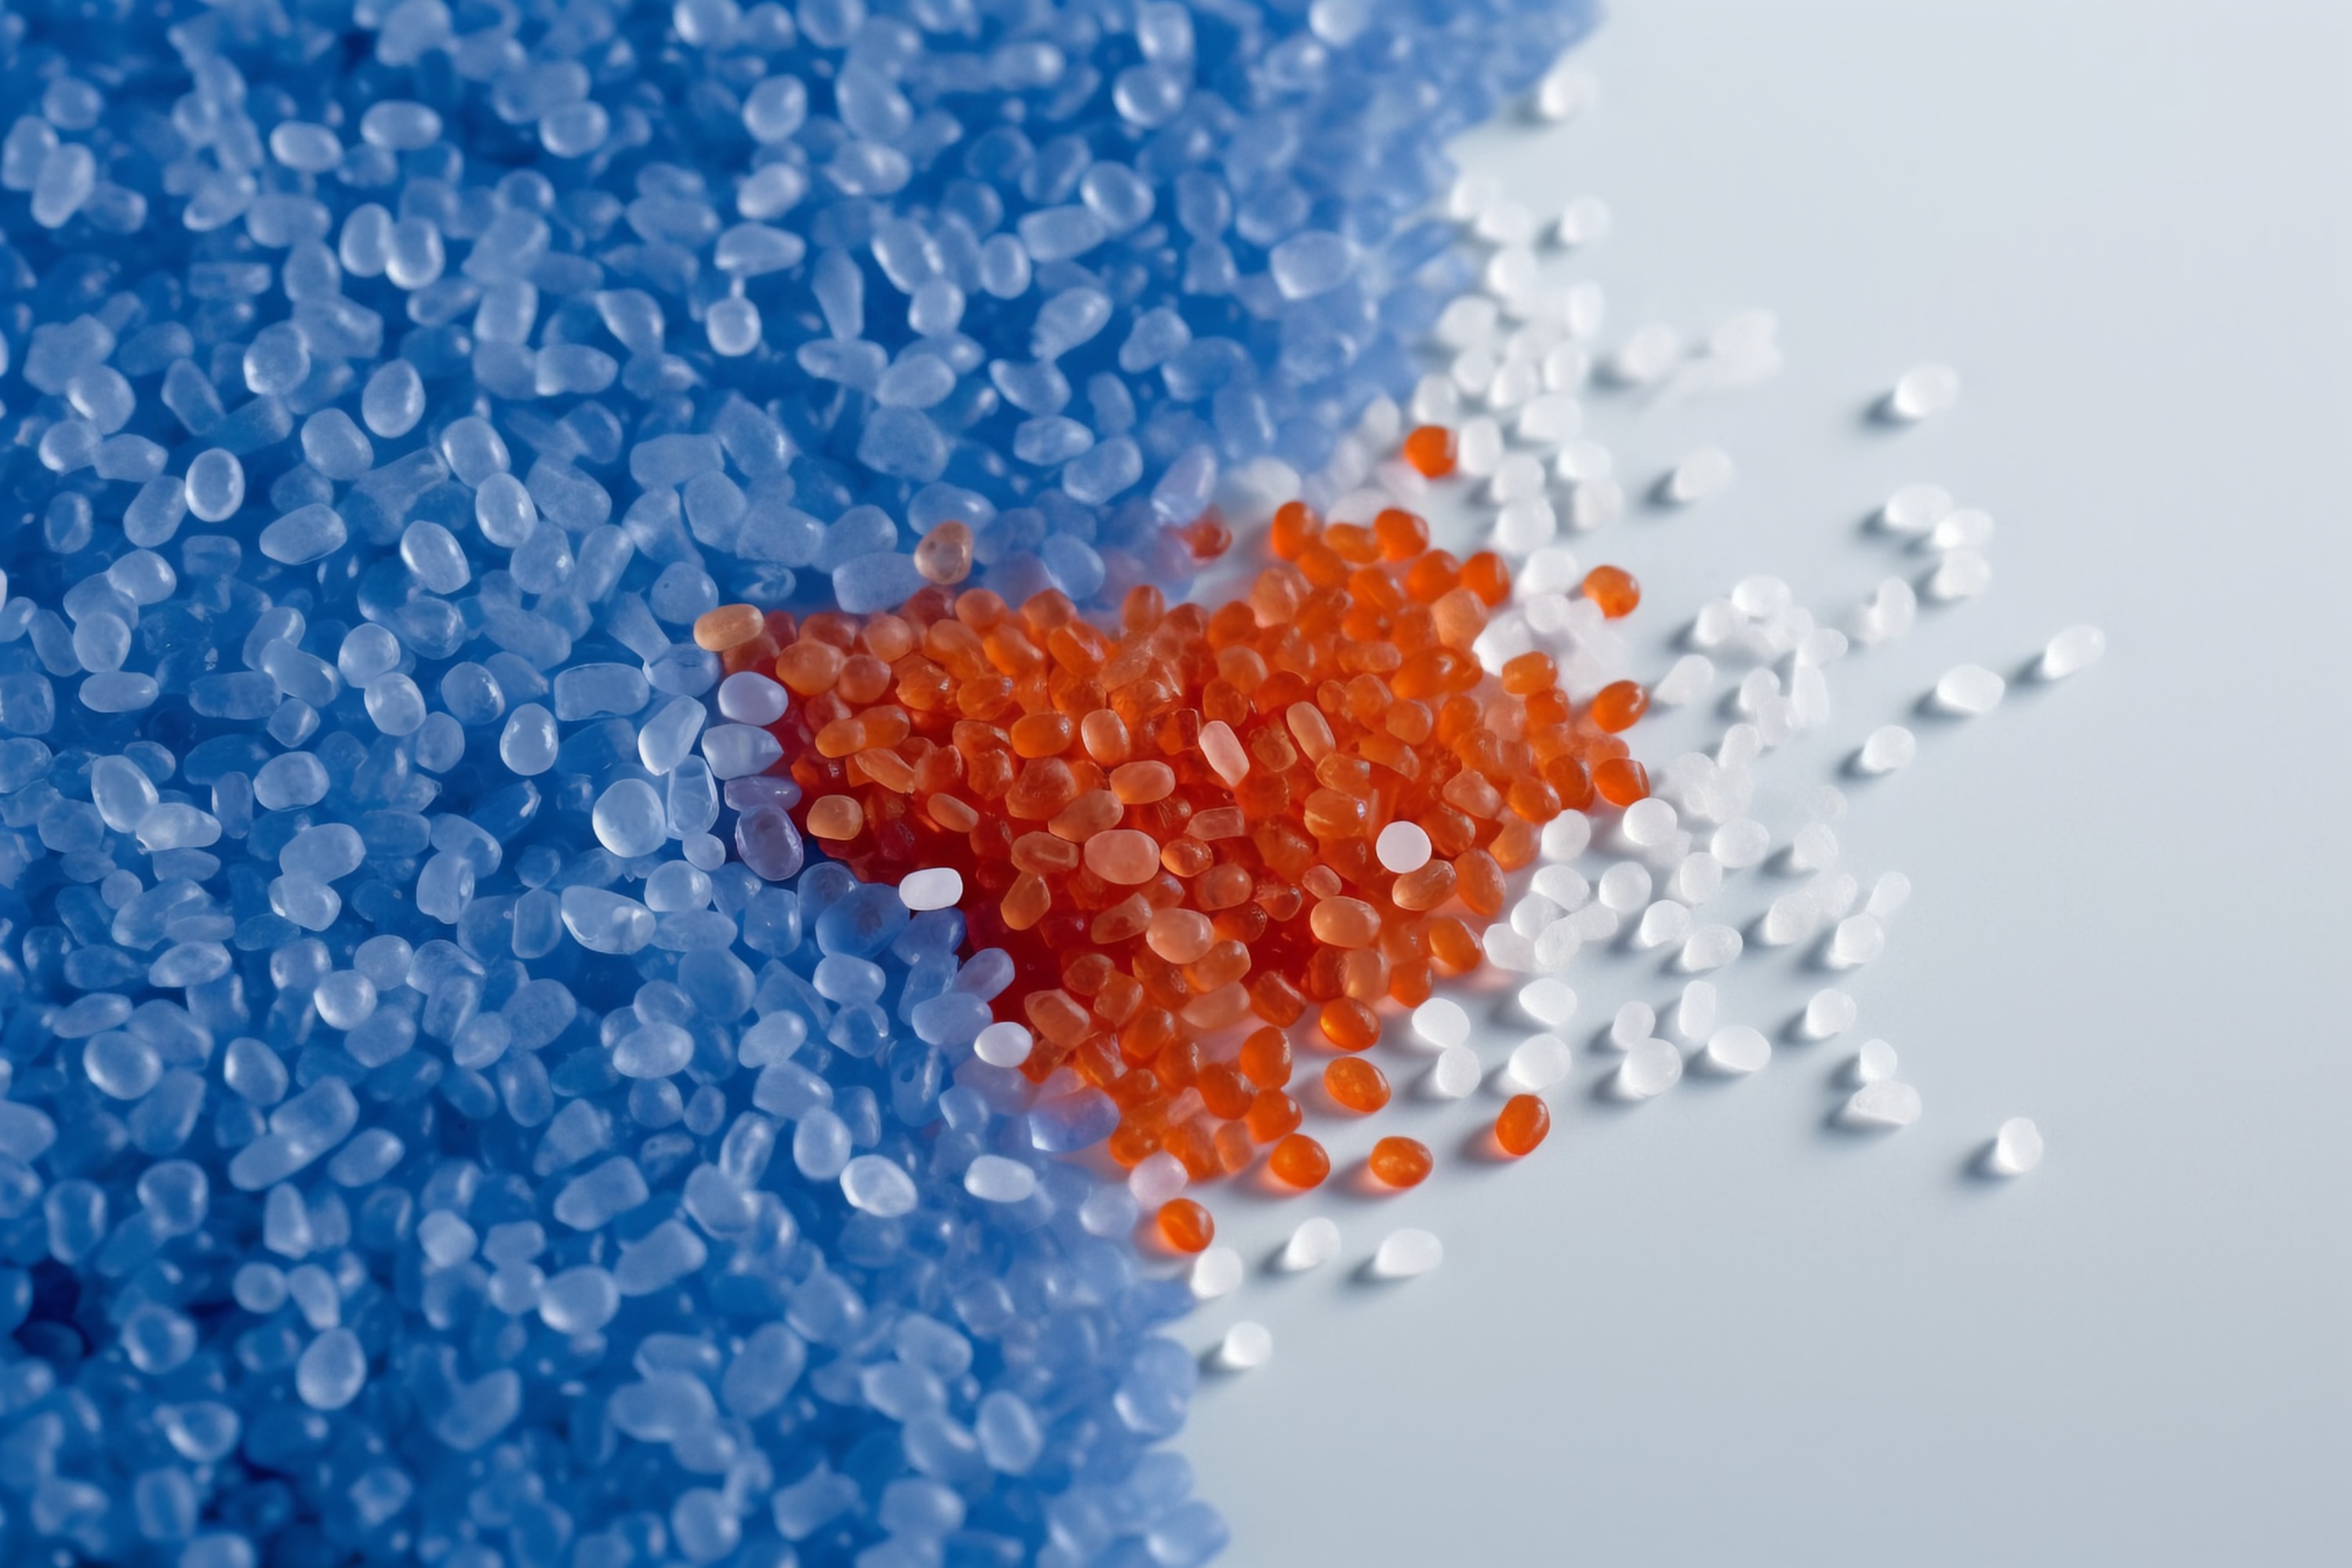 微塑料污染由于塑料的难降解性,环境中长期存在的微小塑料颗粒可能